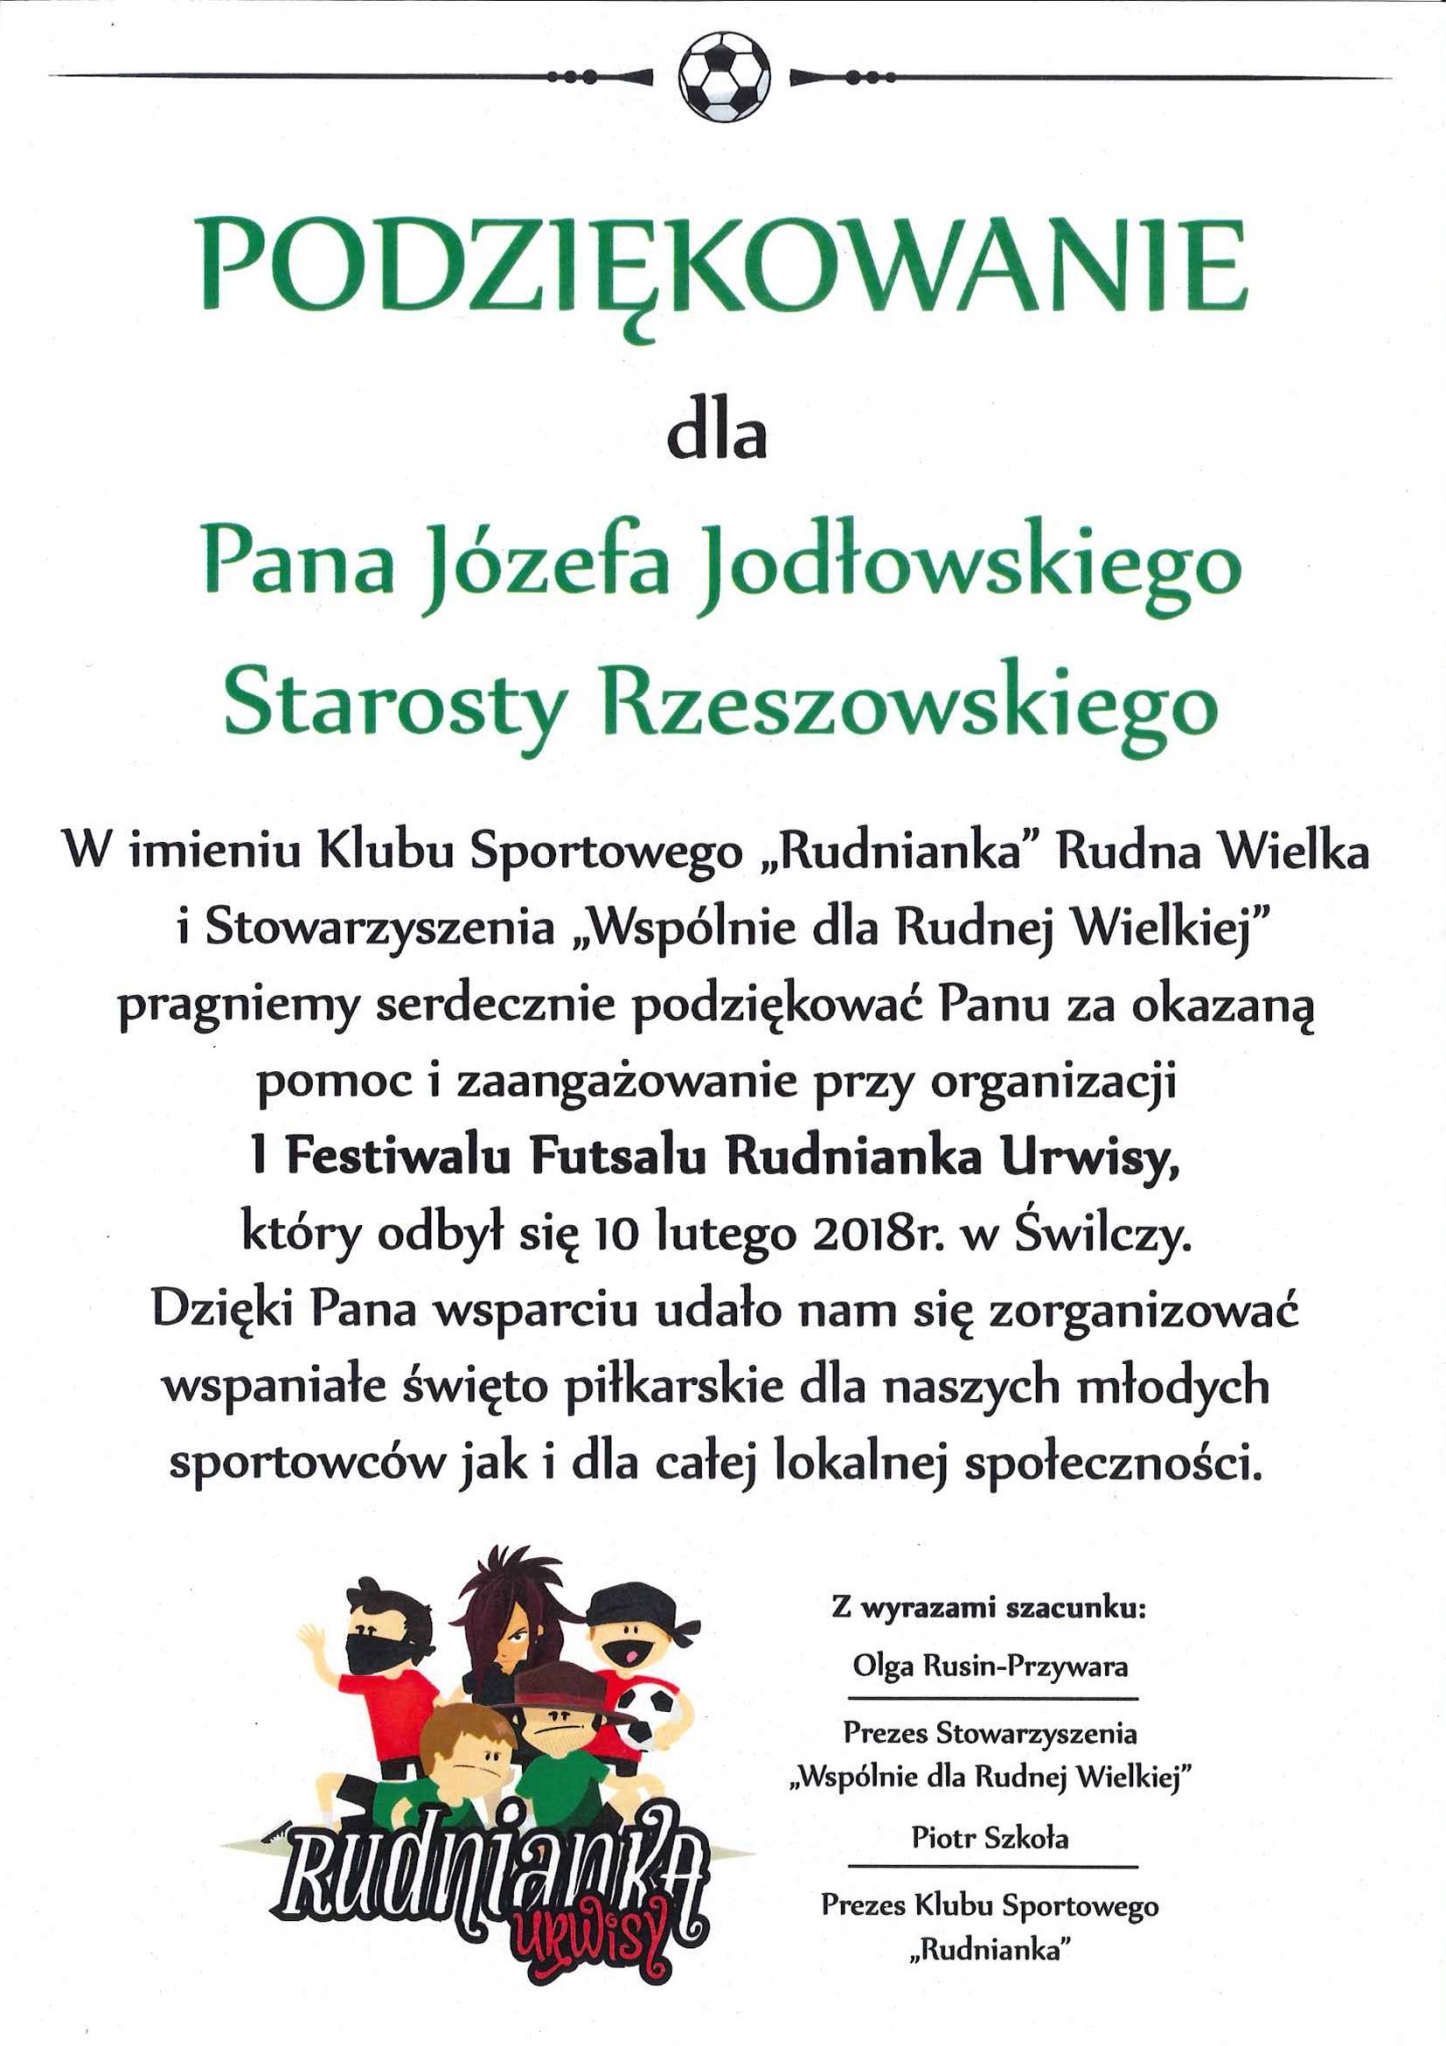 https://powiat.rzeszowski.pl/blog/2020/11/25/wyroznienia-i-wspolpraca-z-organizacjami/201802201303-jpg/